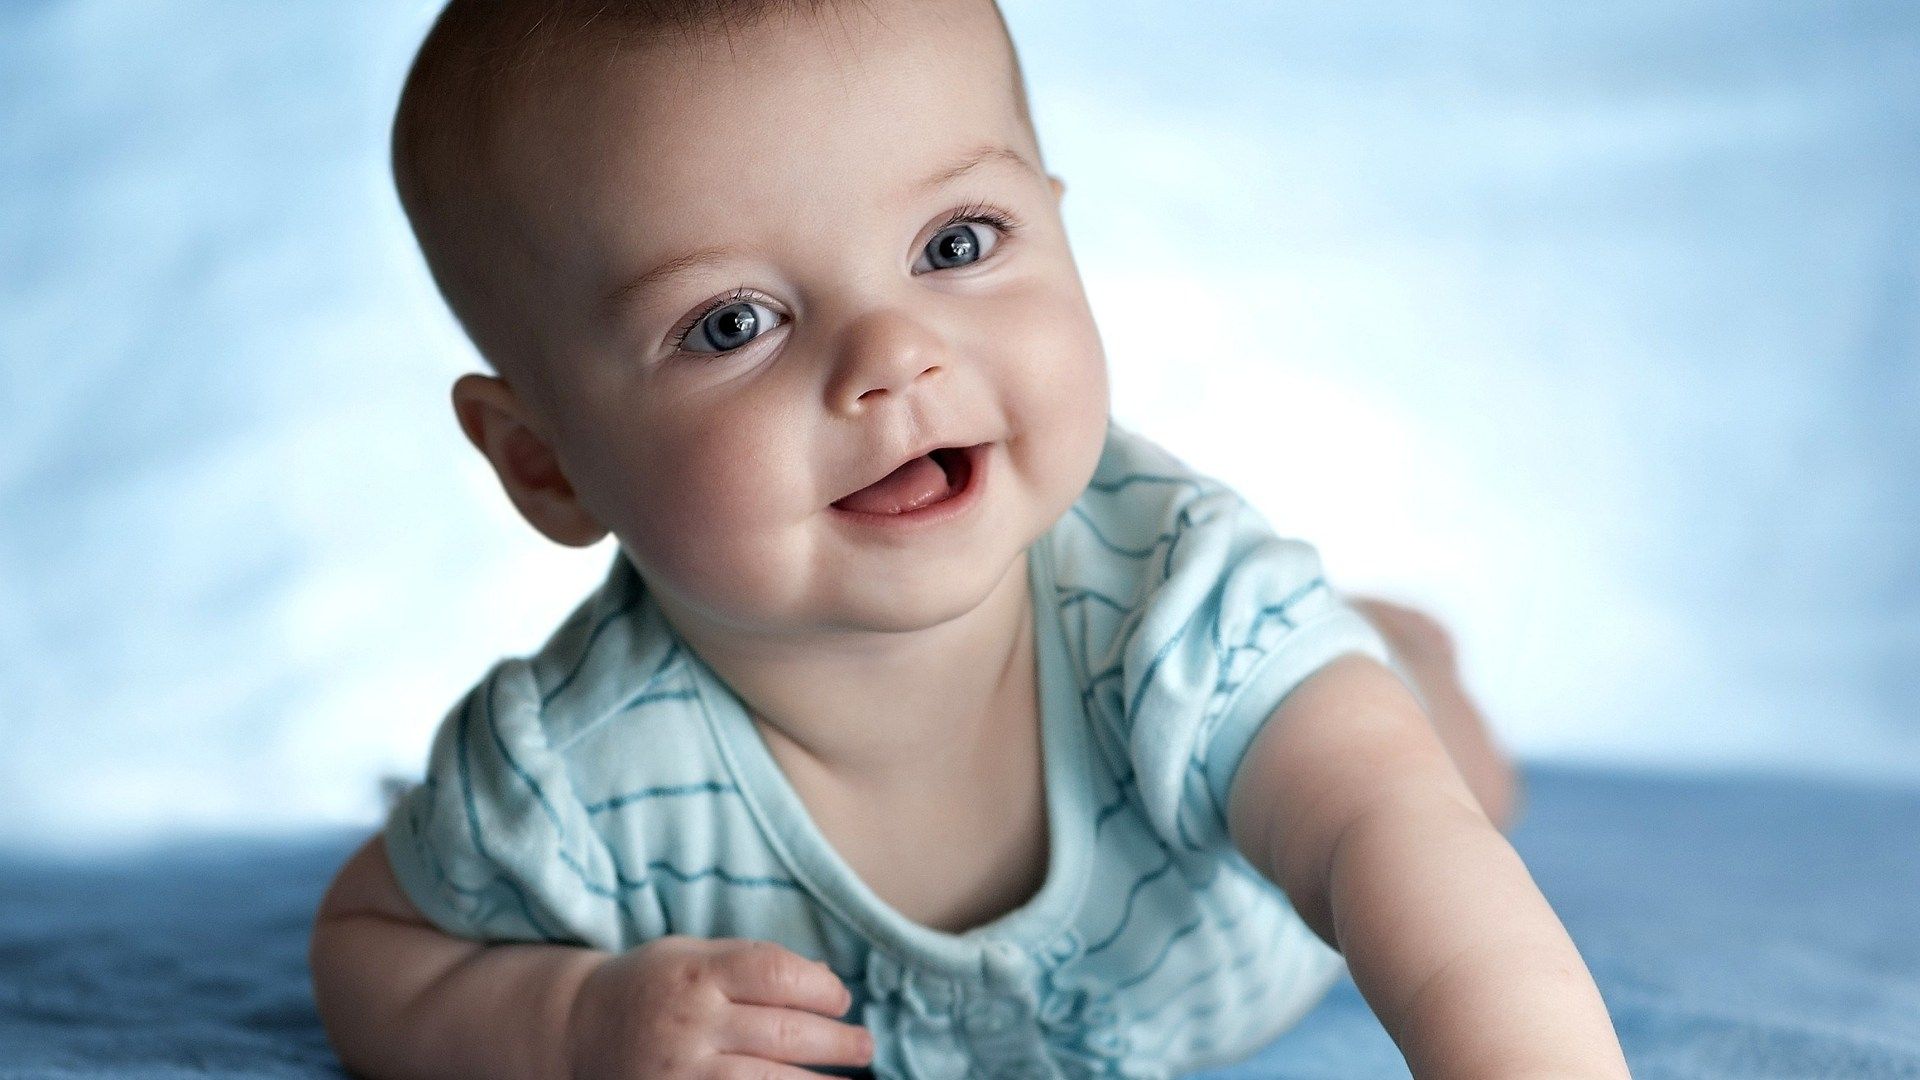 cute little boy hd wallpaper | People - Babies & Children 1 ...